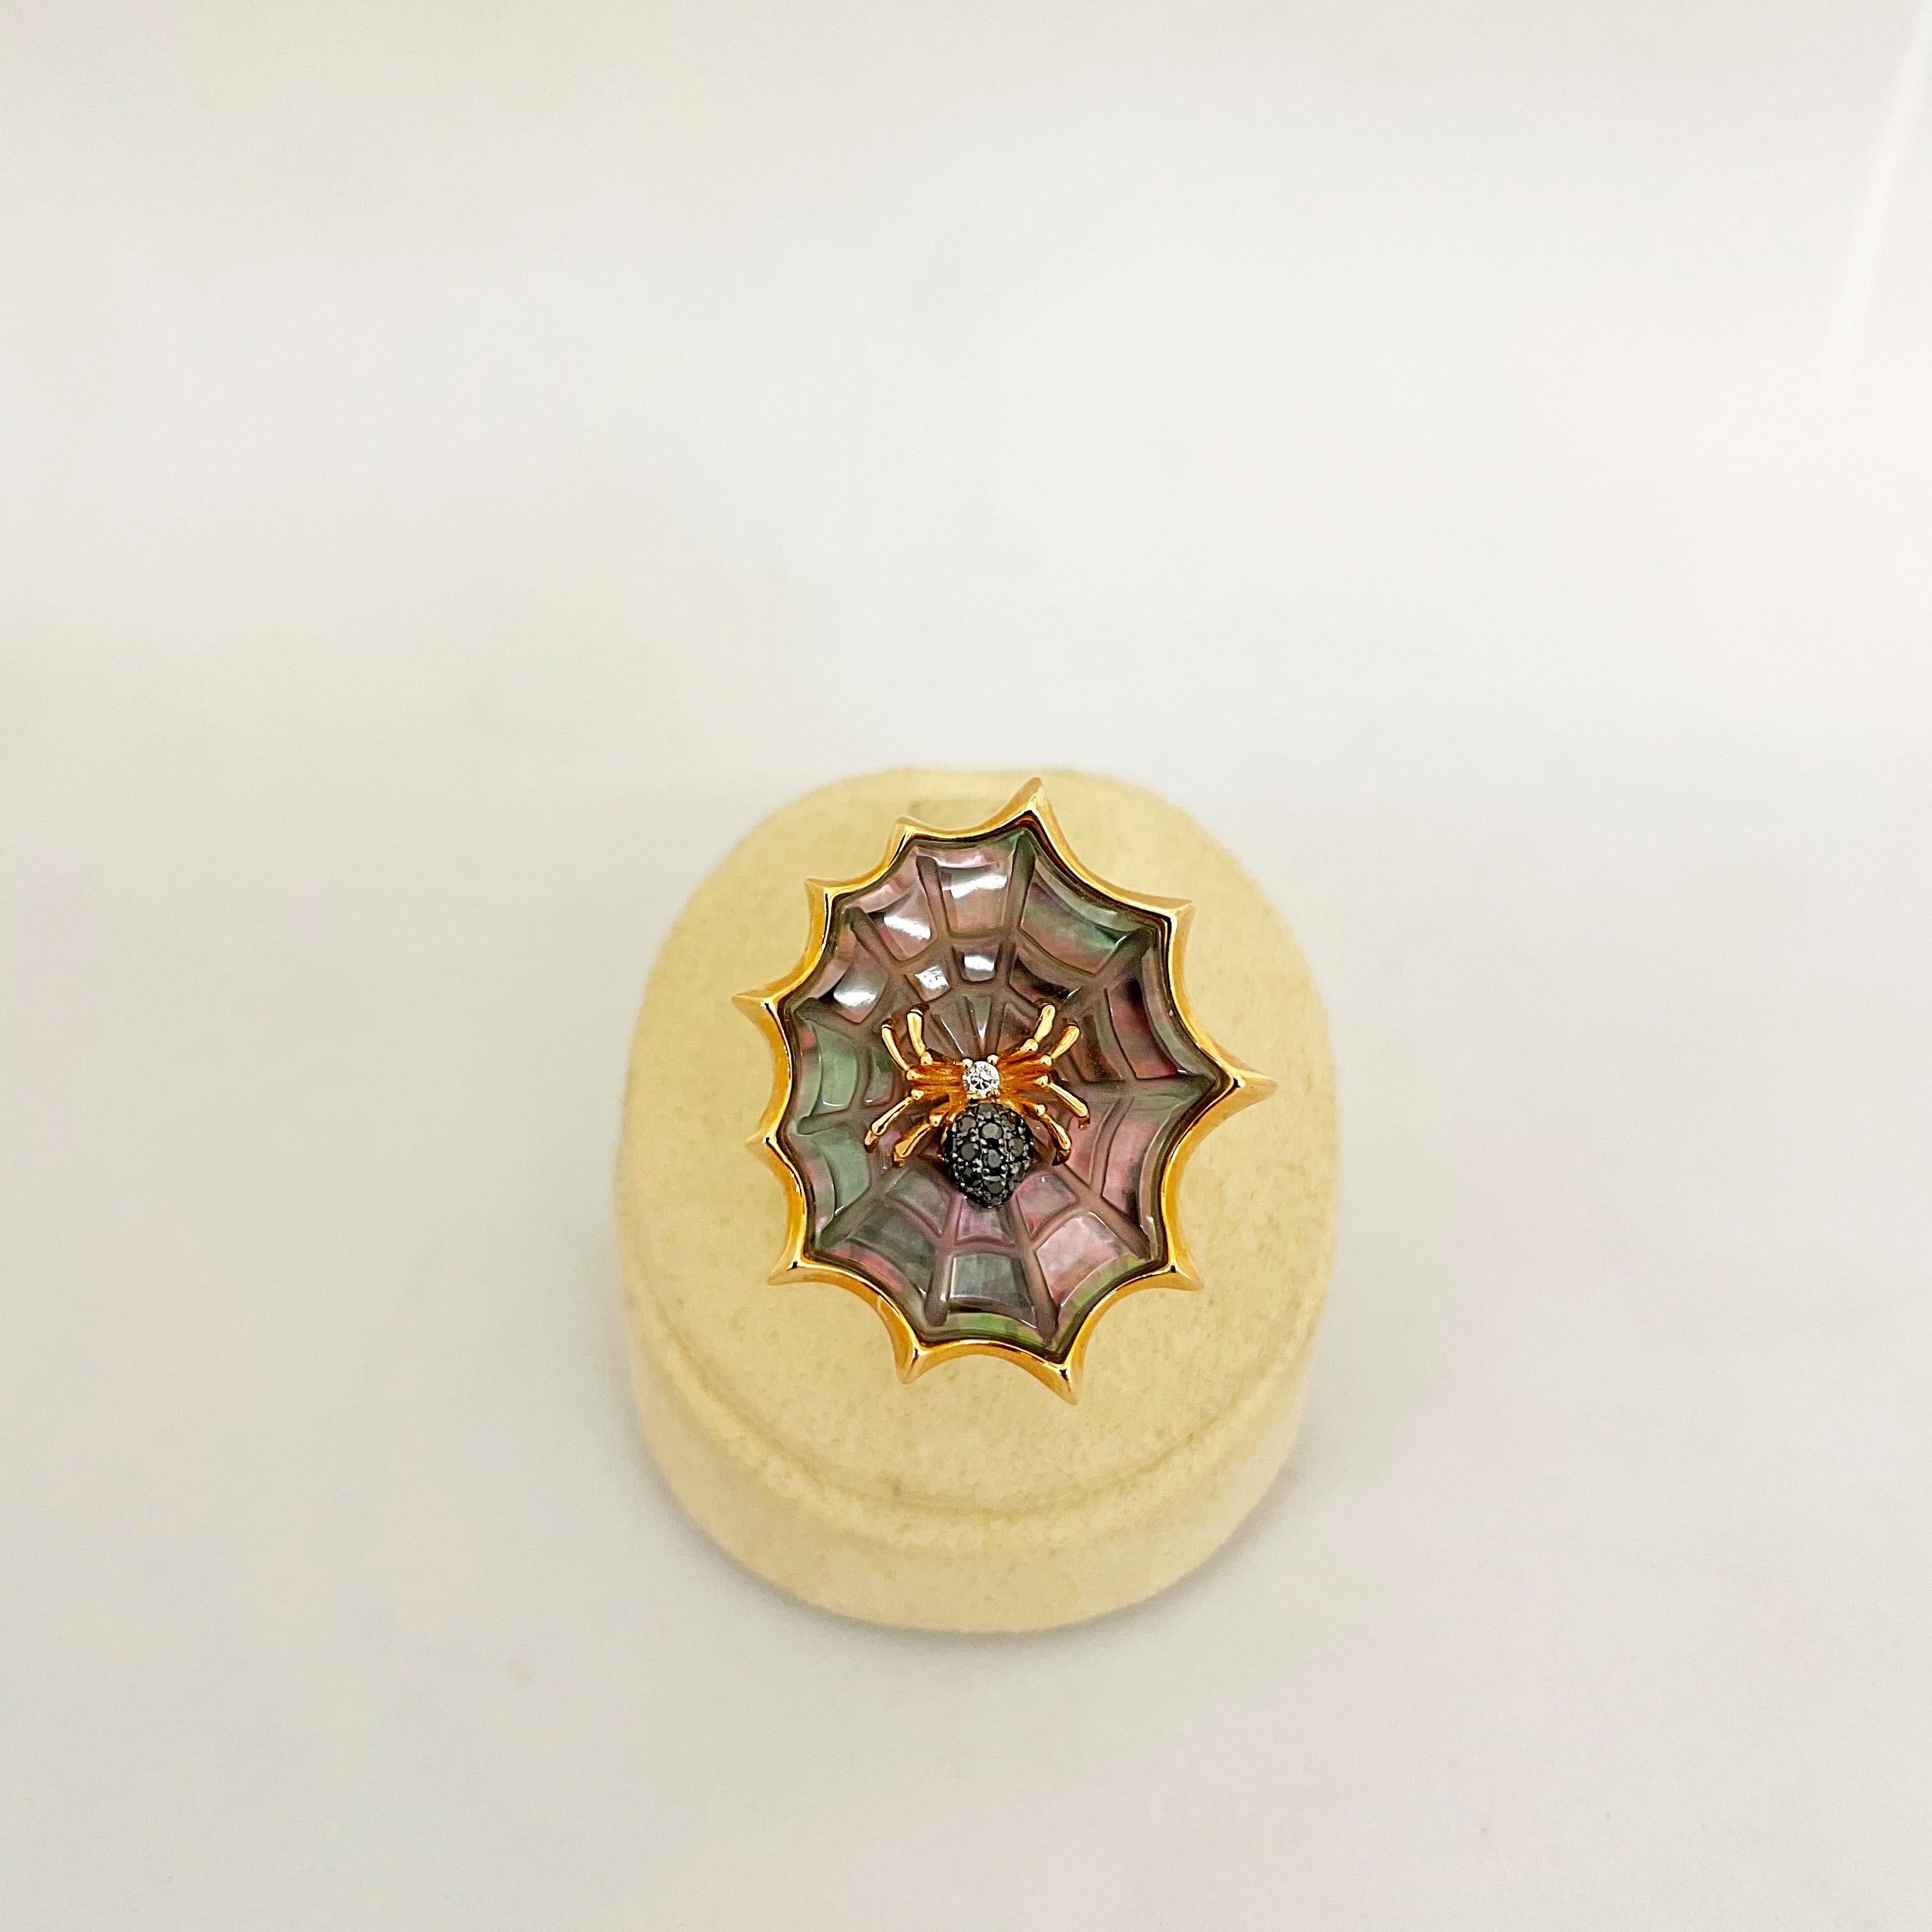 Dieser einzigartige Ring aus 18 Karat Roségold ist in Form einer Spinne gestaltet, die auf ihrem Netz sitzt. Die Spinne aus Roségold ist mit schwarzen Diamanten von 0,05 Karat und weißen Diamanten von 0,02 Karat besetzt. Das wunderschön detaillierte